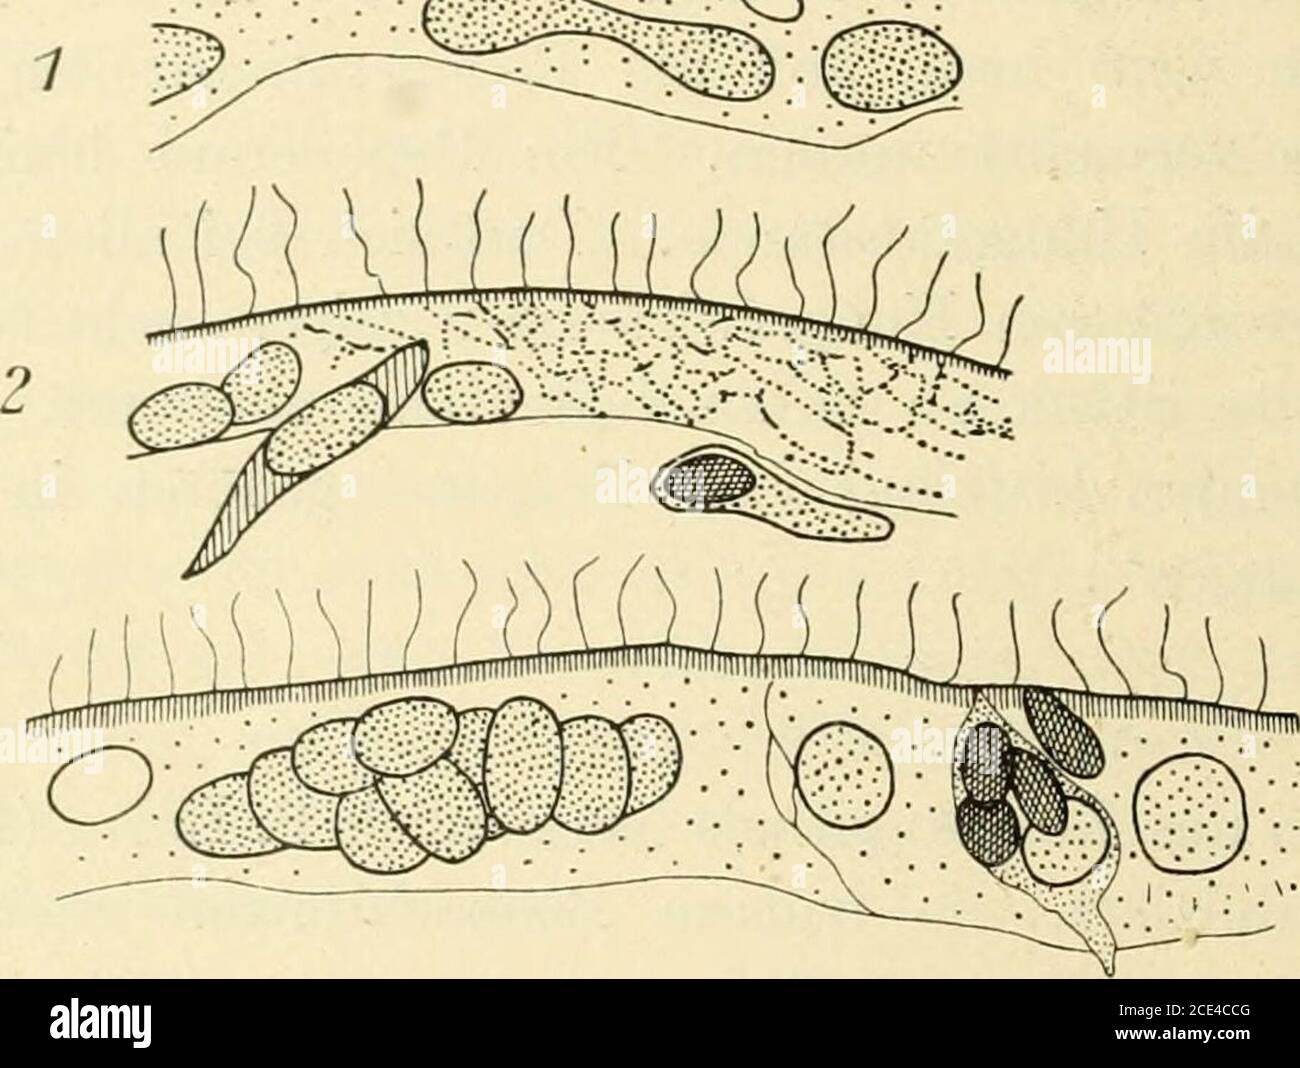 . Turbellaria . ese Anschauung bestätigt durch Unter-suchungen an Planaria siviplicissima, Planaria maculata und Planaria7fiorgani. Schultz (975) und Bardeen glauben, daß sich die Epithel-zellen einfach durch amitotische Teilung vermehren, und daß sich dadurchdem Wachstum des Regenerates entsprechend, das Körperepithel ver-größert. 3274 Lang (I.e.) findet, daß sich bei Planaria luguhris die Wunde sehrbald provisorisch schließt. Sofort nach der Operation ziehen sich, wienach jeder Verwundung einer Planarie, die Wundränder infolge der Kon-traktion der Kingmuskulatur zusammen, die Wunde verkleine Stock Photo